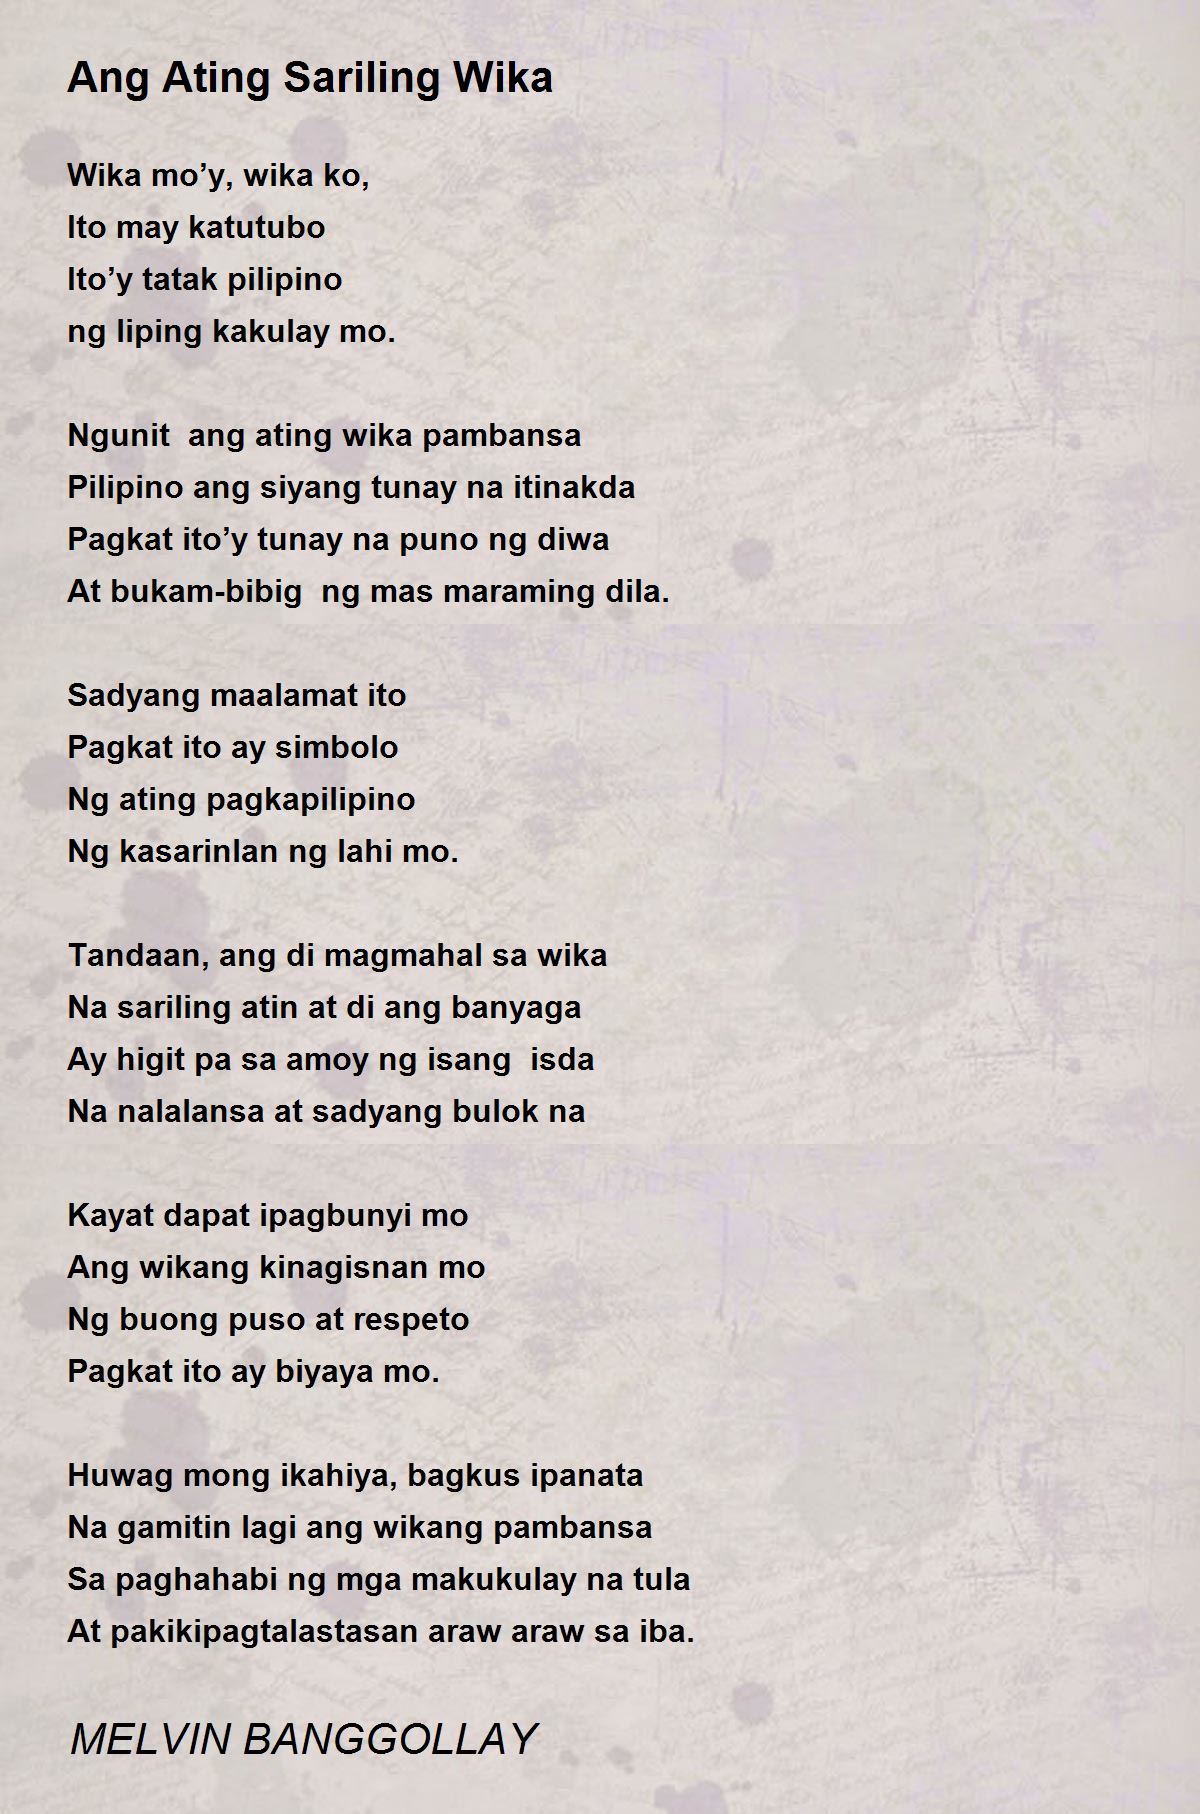 Ang Ating Sariling Wika - Ang Ating Sariling Wika Poem by MELVIN BANGGOLLAY